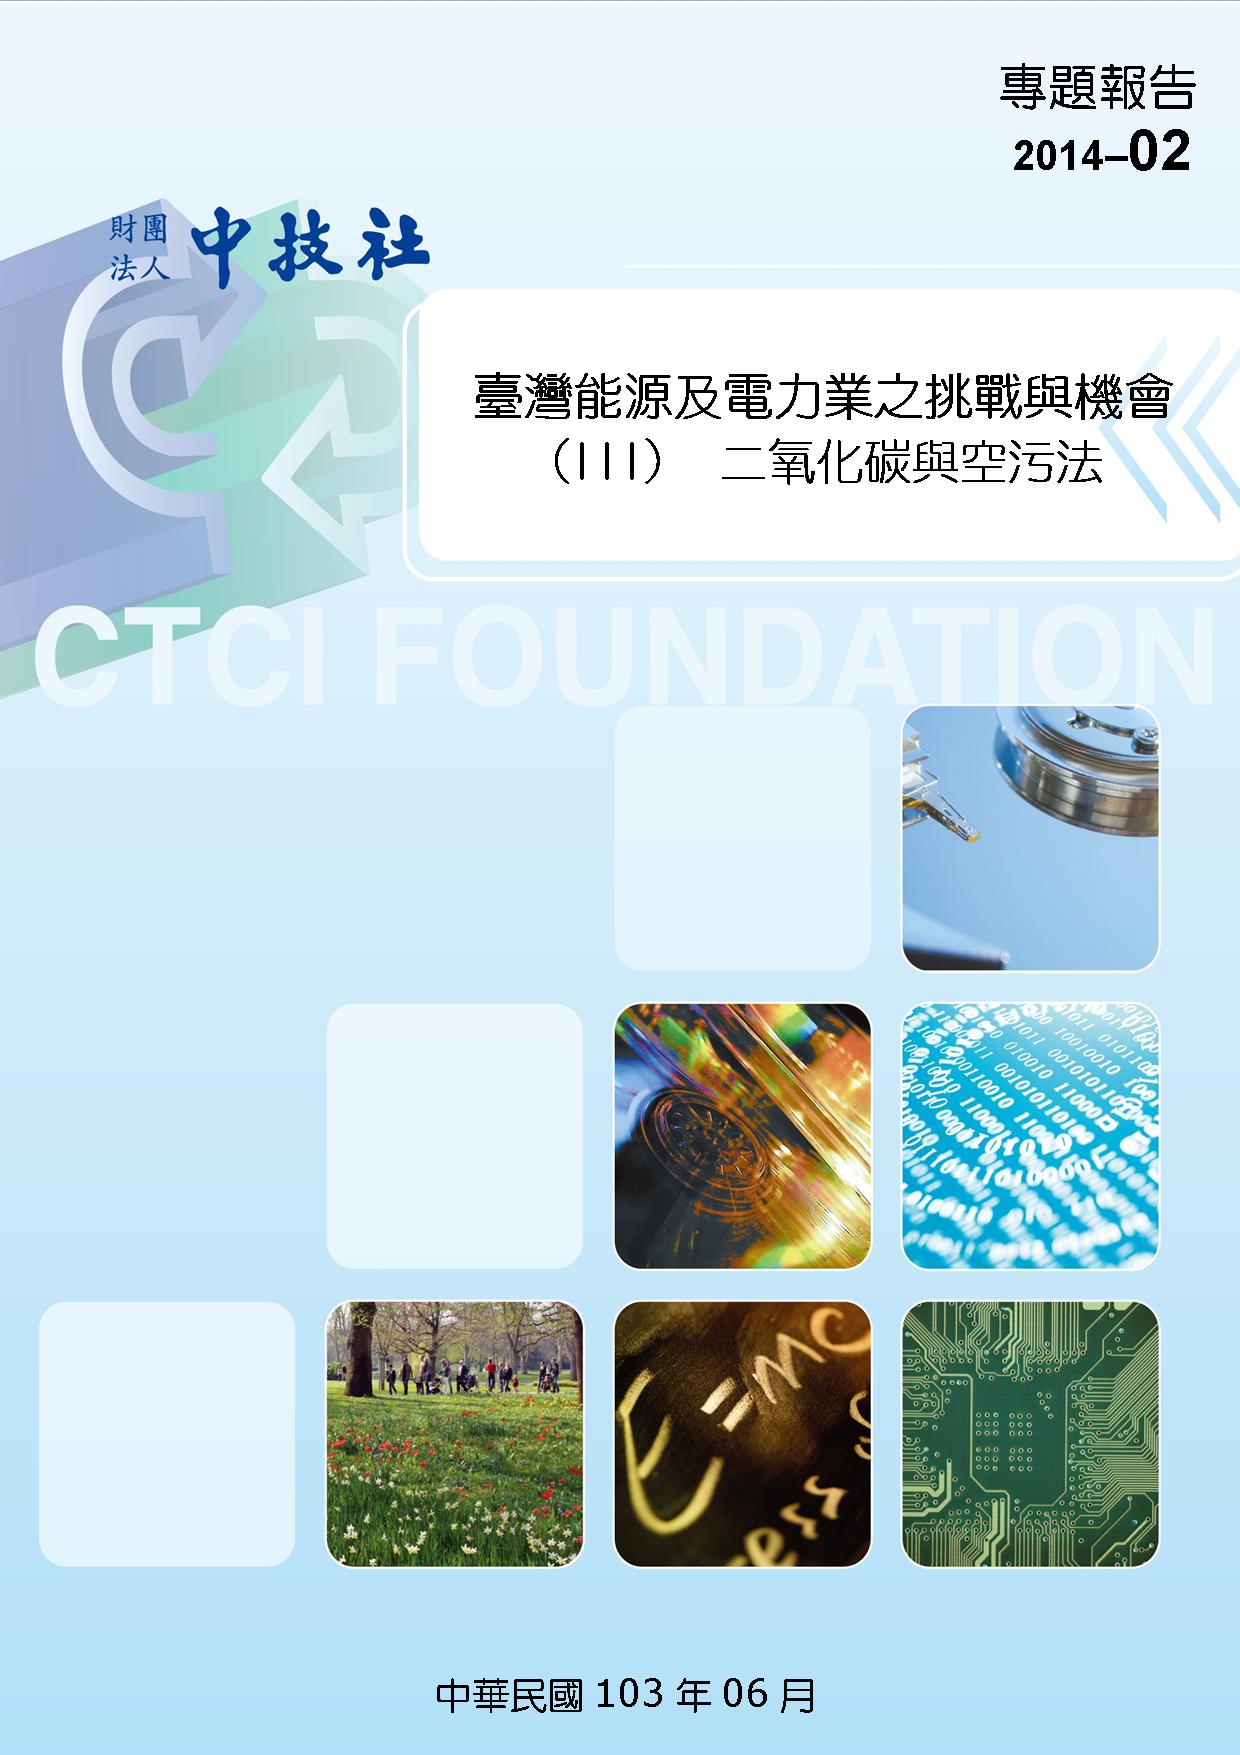 封面2014-02台灣能源及電力業之挑戰與機會.jpg